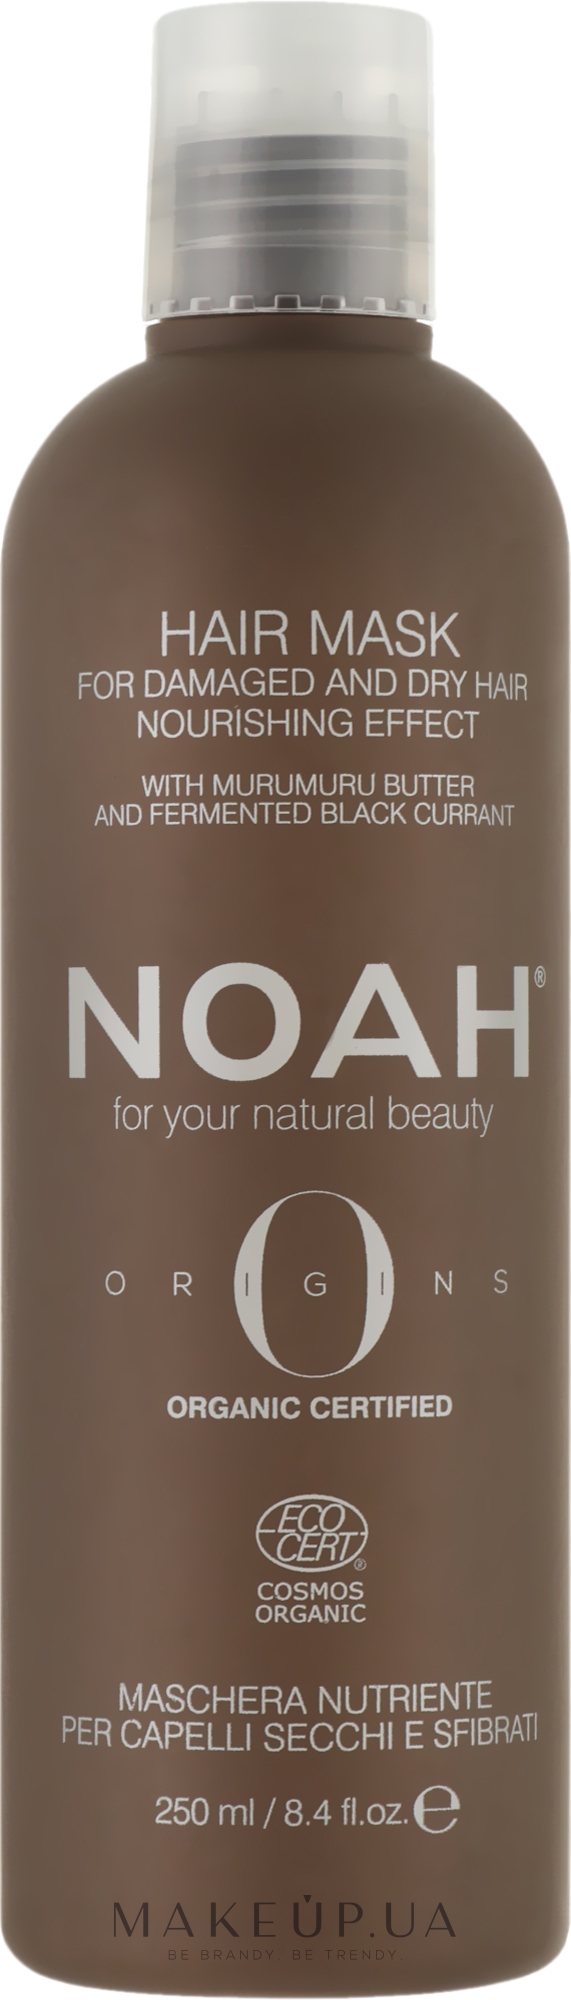 Живильна маска для волосся - Noah Origins Nourishing Hair Mask — фото 250ml